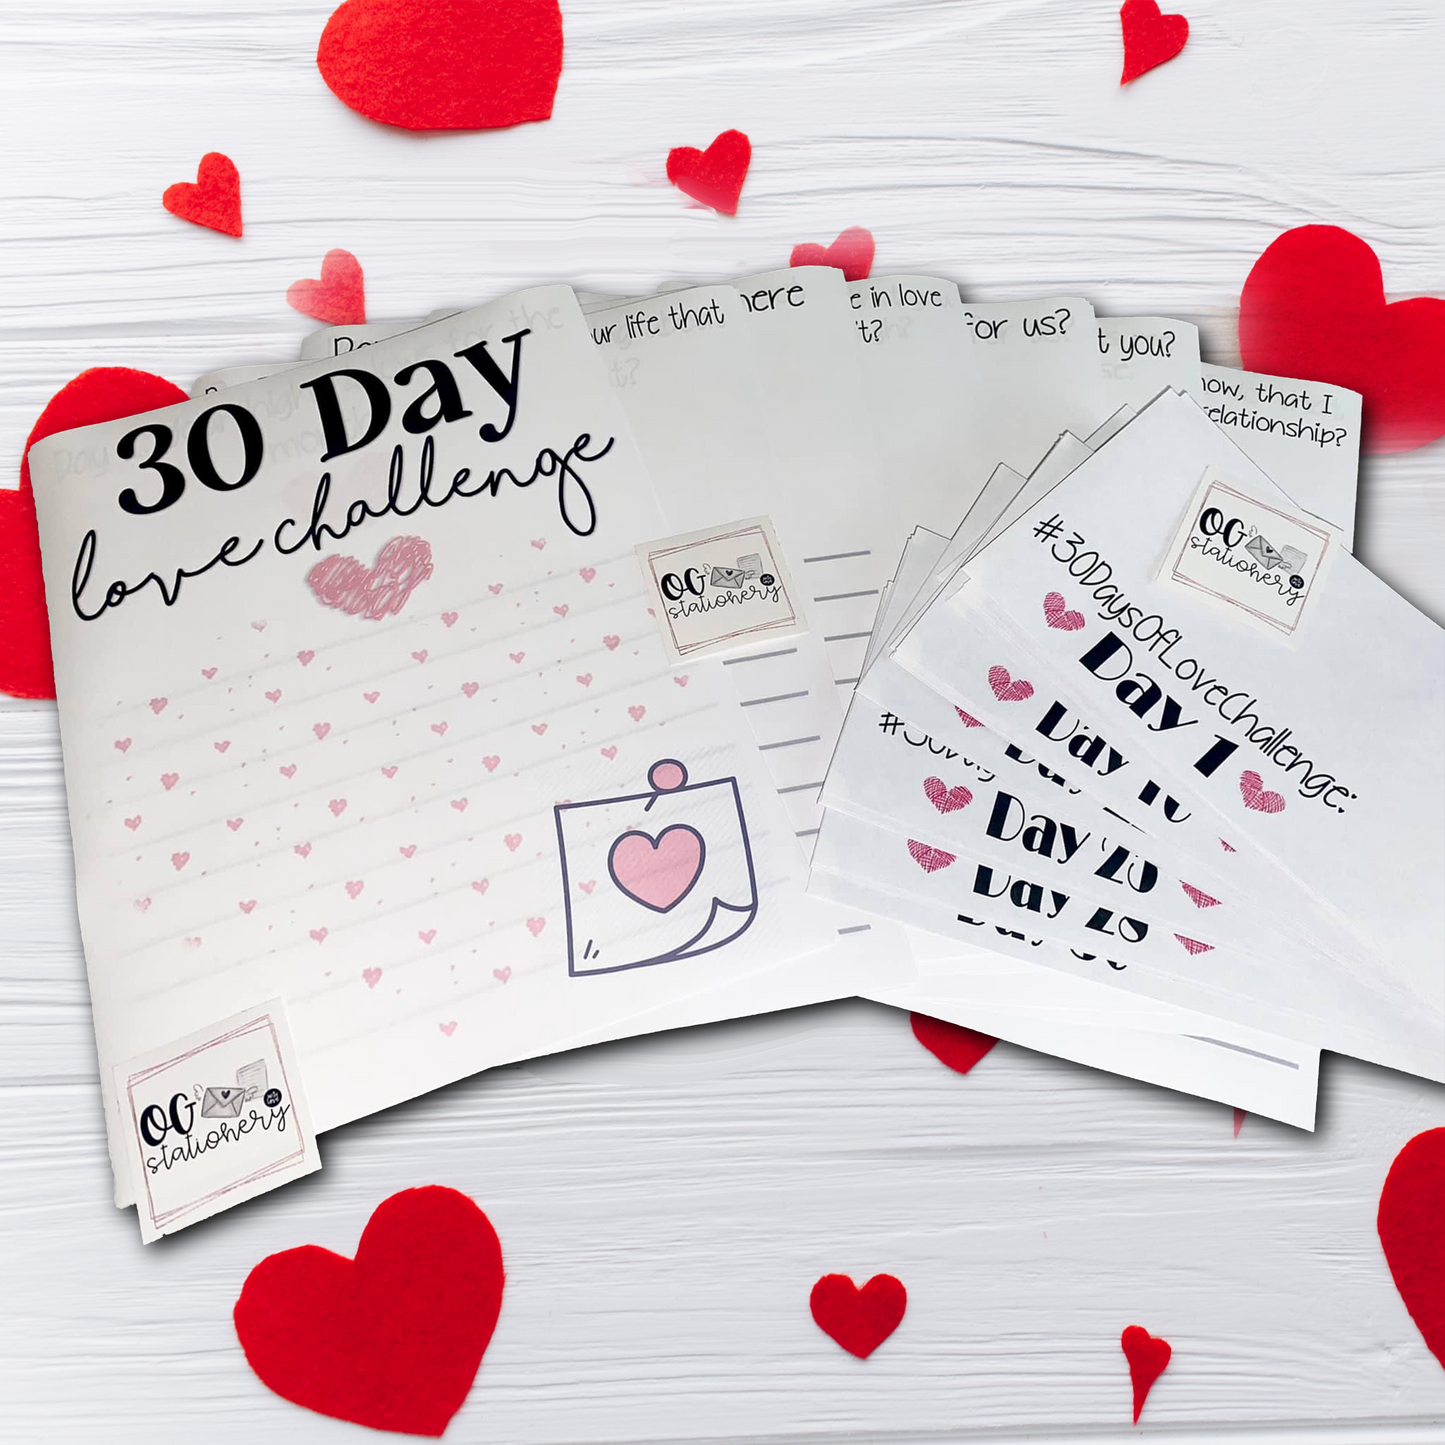 30 Day Love Challenge - Part 1